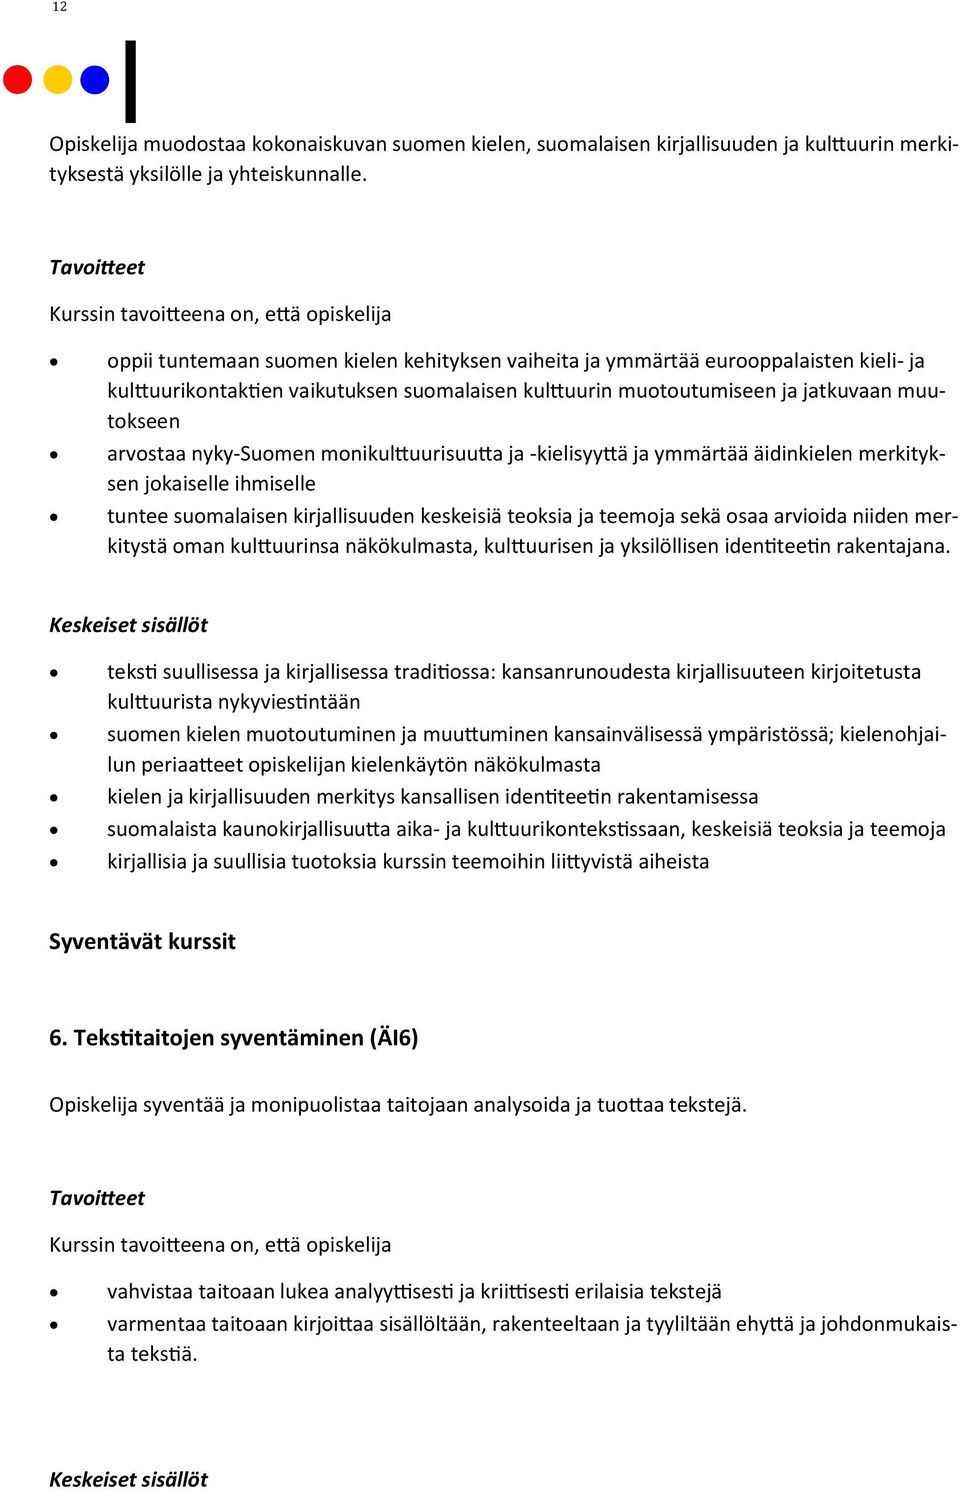 nyky-suomen monikulttuurisuutta ja -kielisyyttä ja ymmärtää äidinkielen merkityksen jokaiselle ihmiselle tuntee suomalaisen kirjallisuuden keskeisiä teoksia ja teemoja sekä osaa arvioida niiden